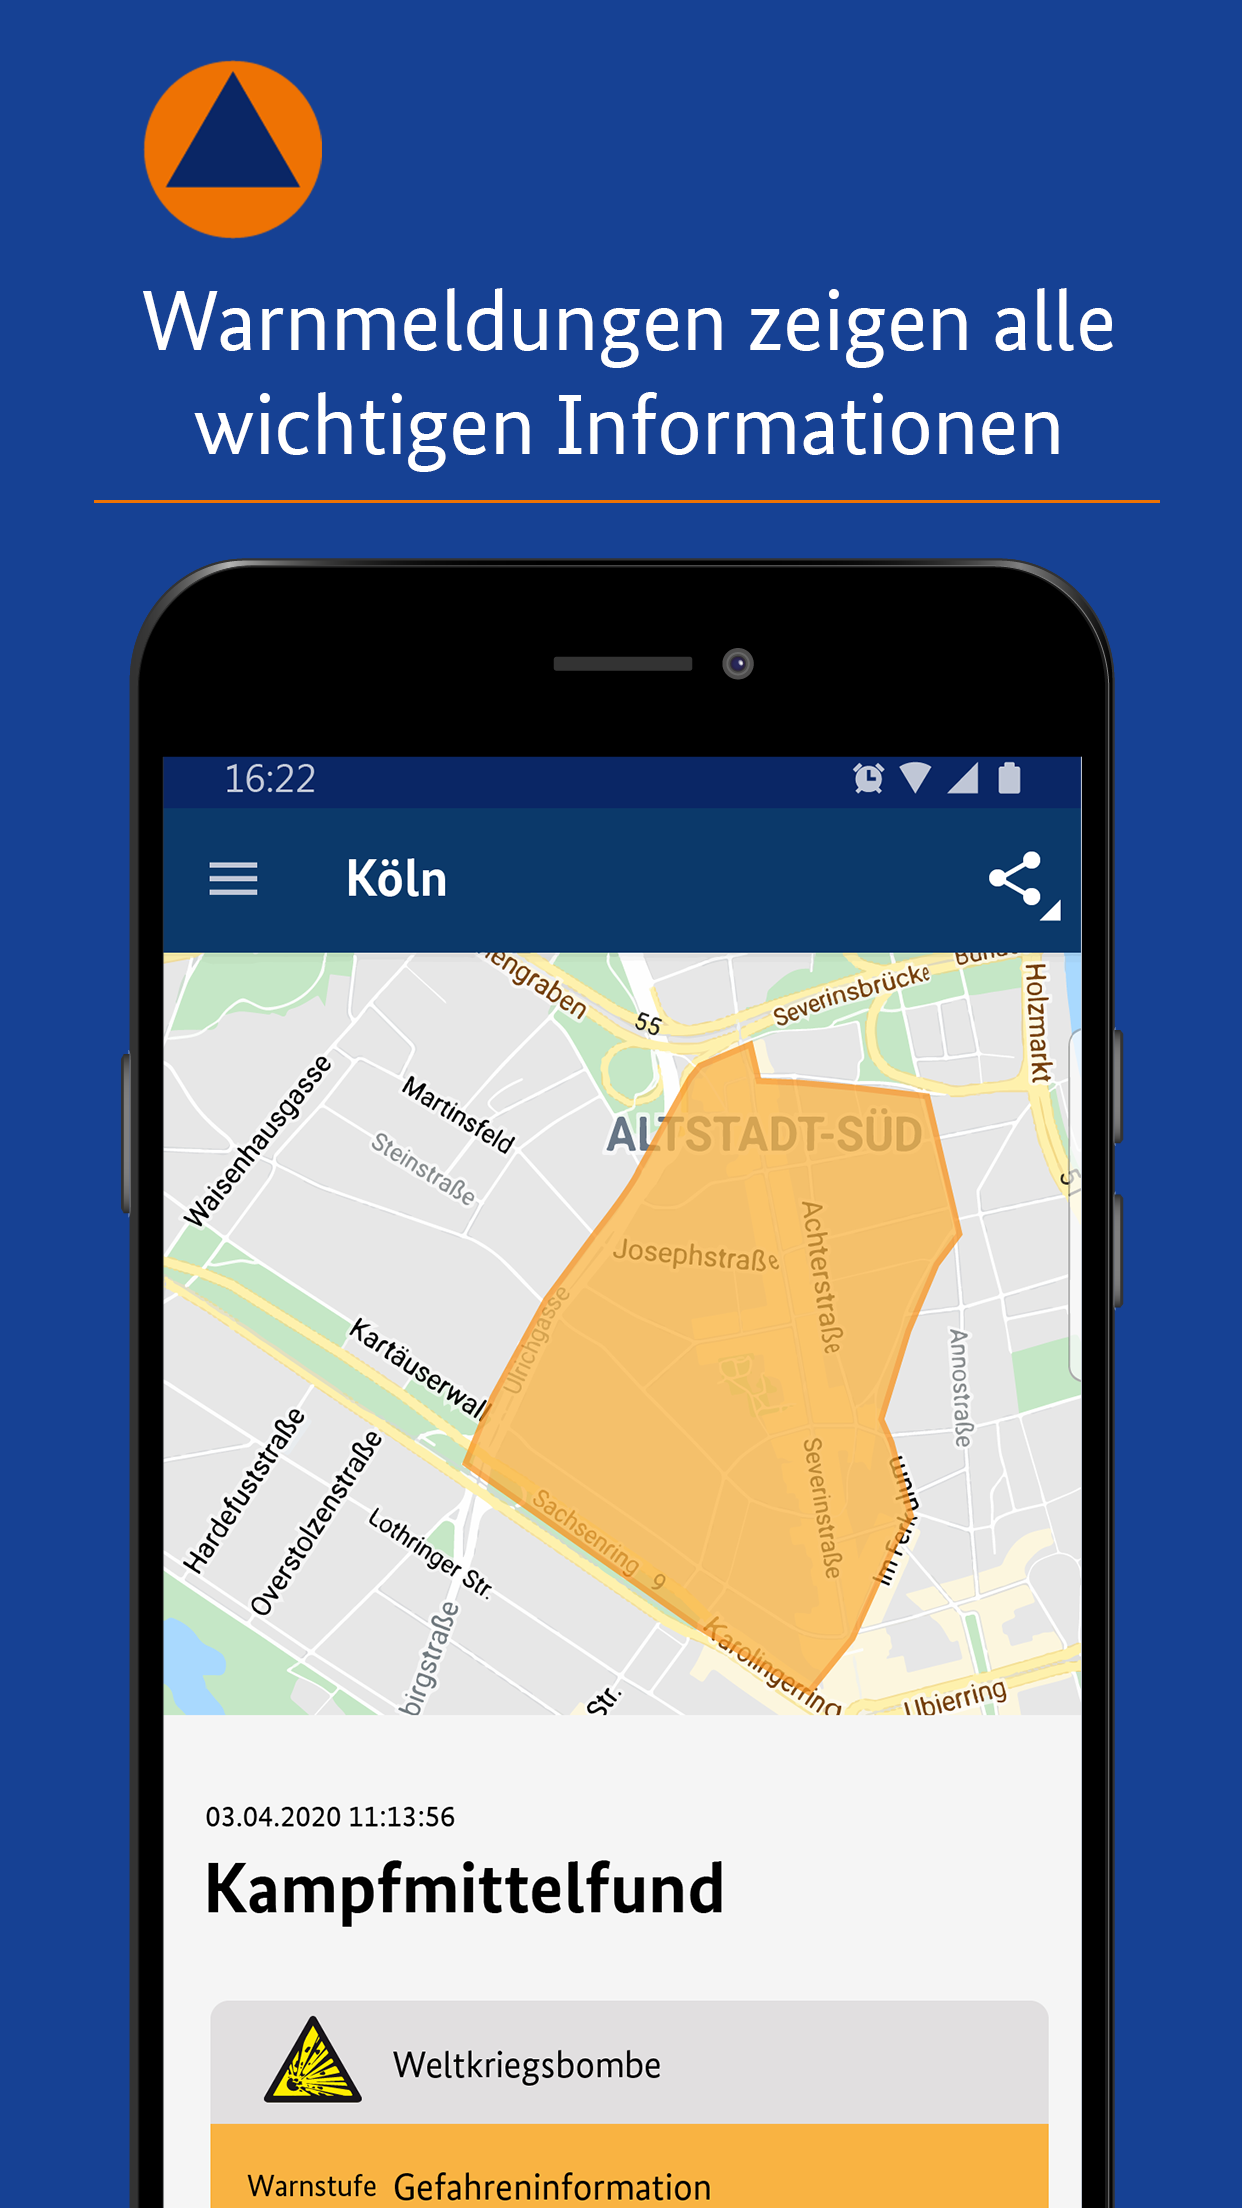 Android application NINA - Die Warn-App des BBK screenshort